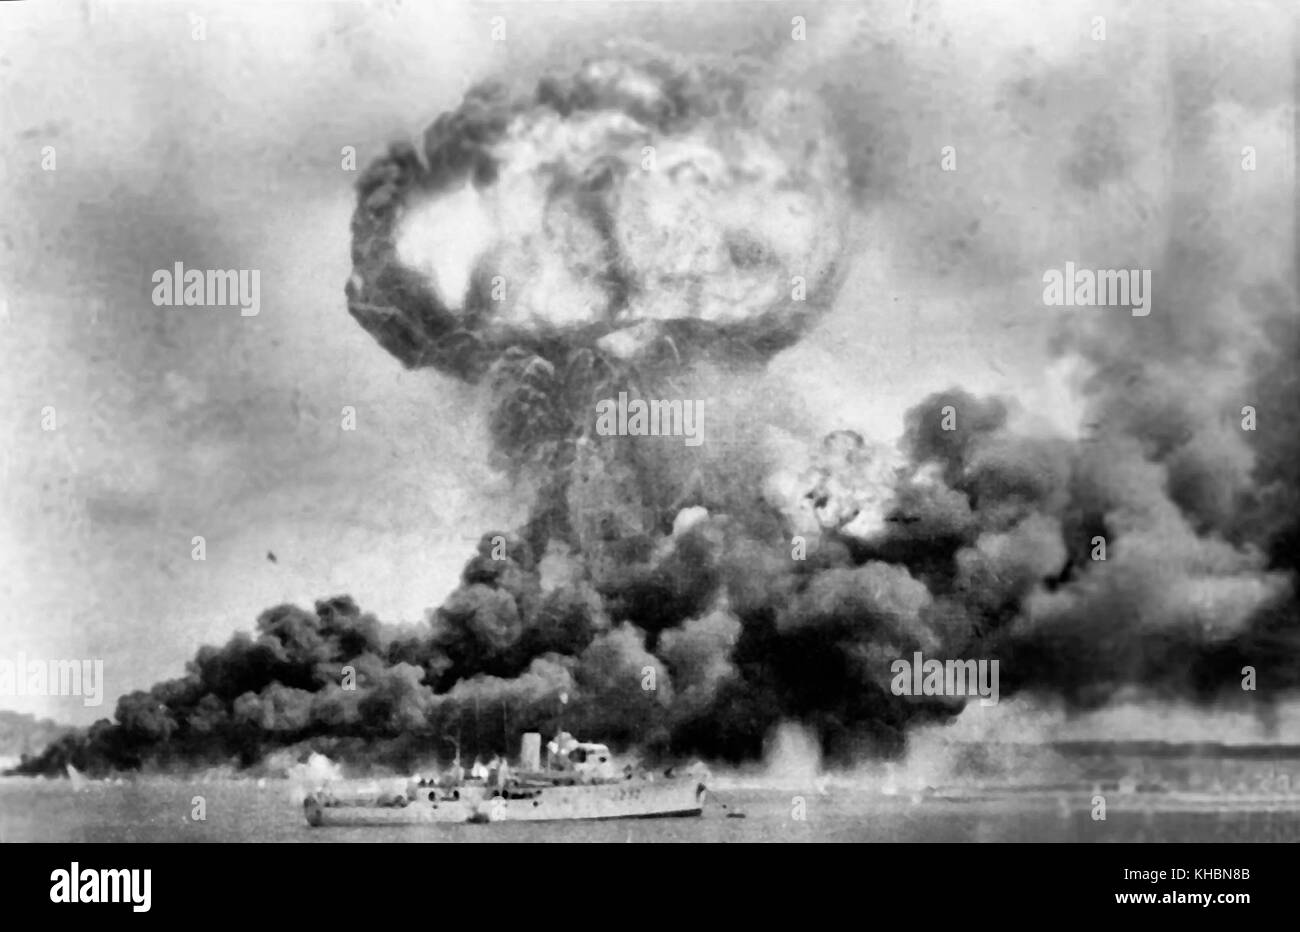 Die Explosion des MV Neptuna und Rauchwolken von Öltanks, während der ersten japanischen Luftangriff auf dem australischen Festland schlagen, in Darwin am 19. Februar 1942. Im Vordergrund ist hmas Deloraine, die Schäden zu entkommen. Datum 19. Februar 1942 Stockfoto